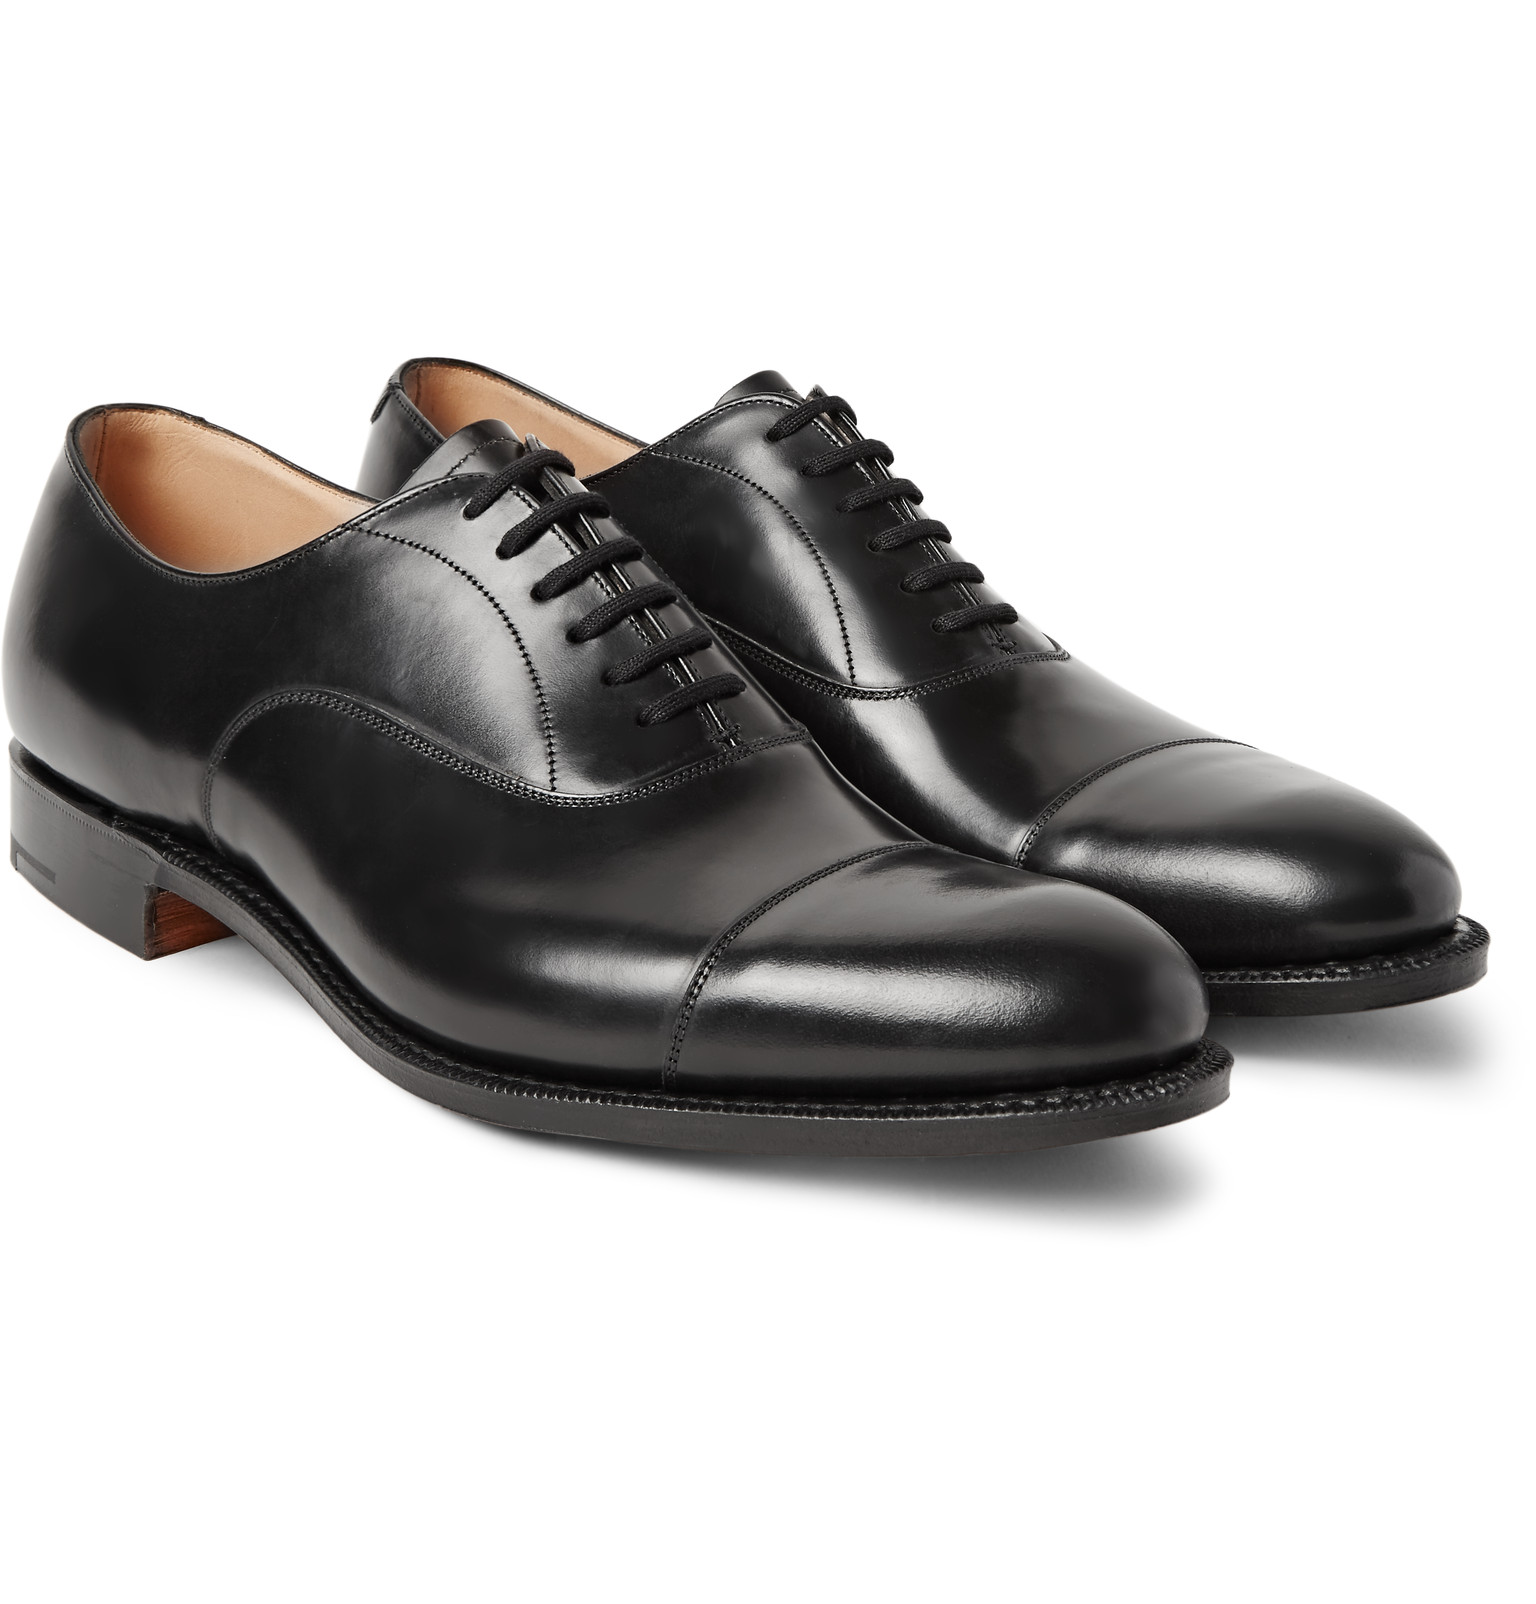 church shoes churchu0027sdubai polished-leather oxford shoes NHKSSOU